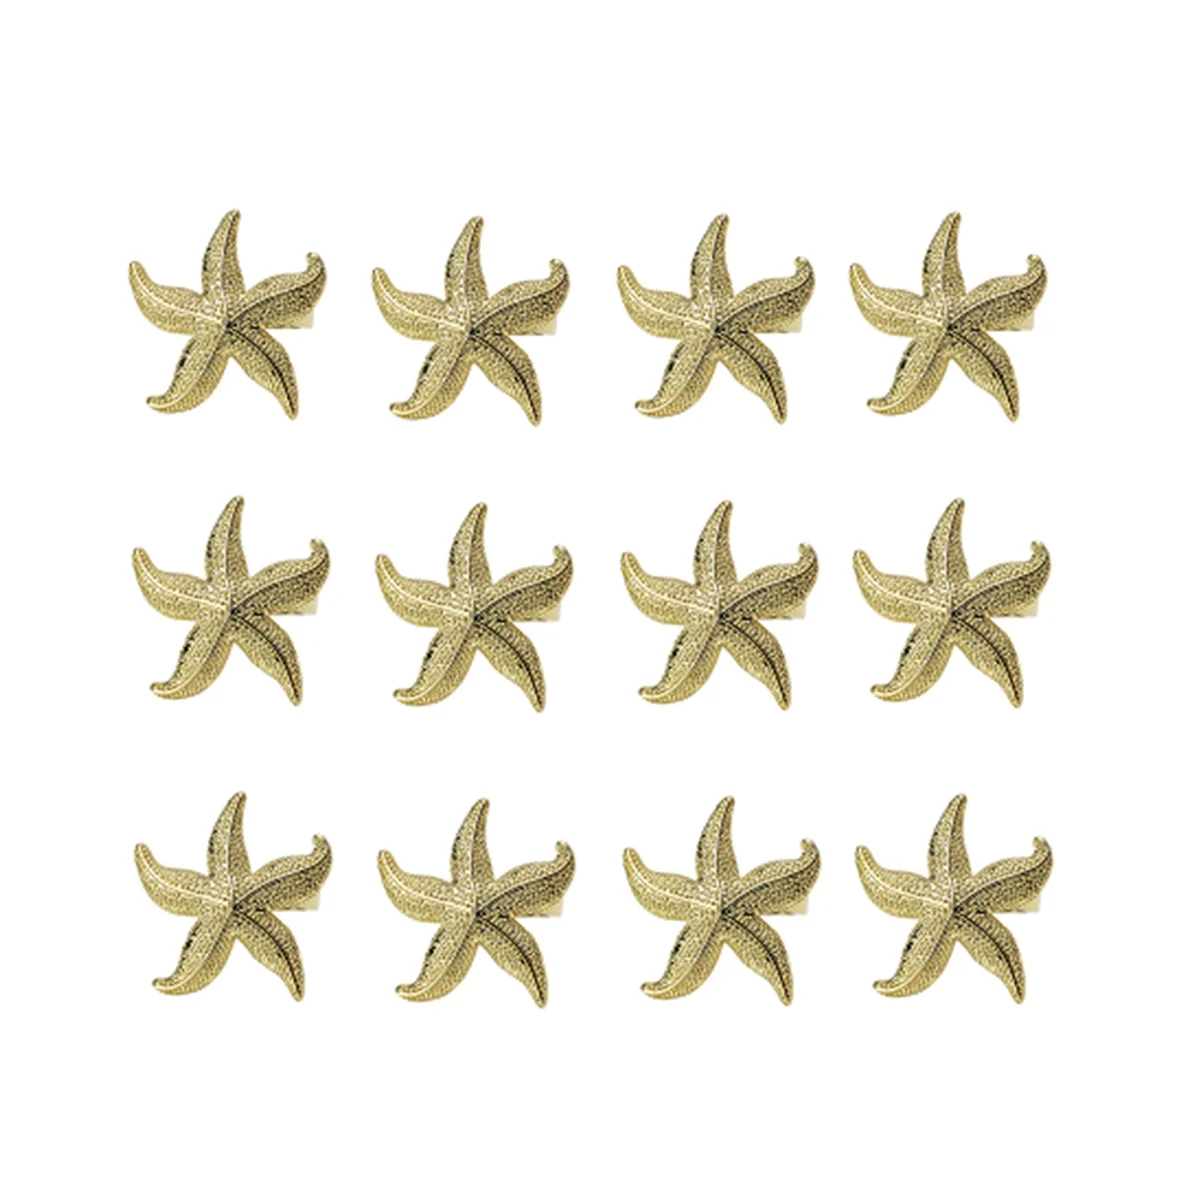 

Кольца для салфеток с морскими звездами, 12 золотых украшений в морском стиле для летней свадебной вечеринки, пляжного стола